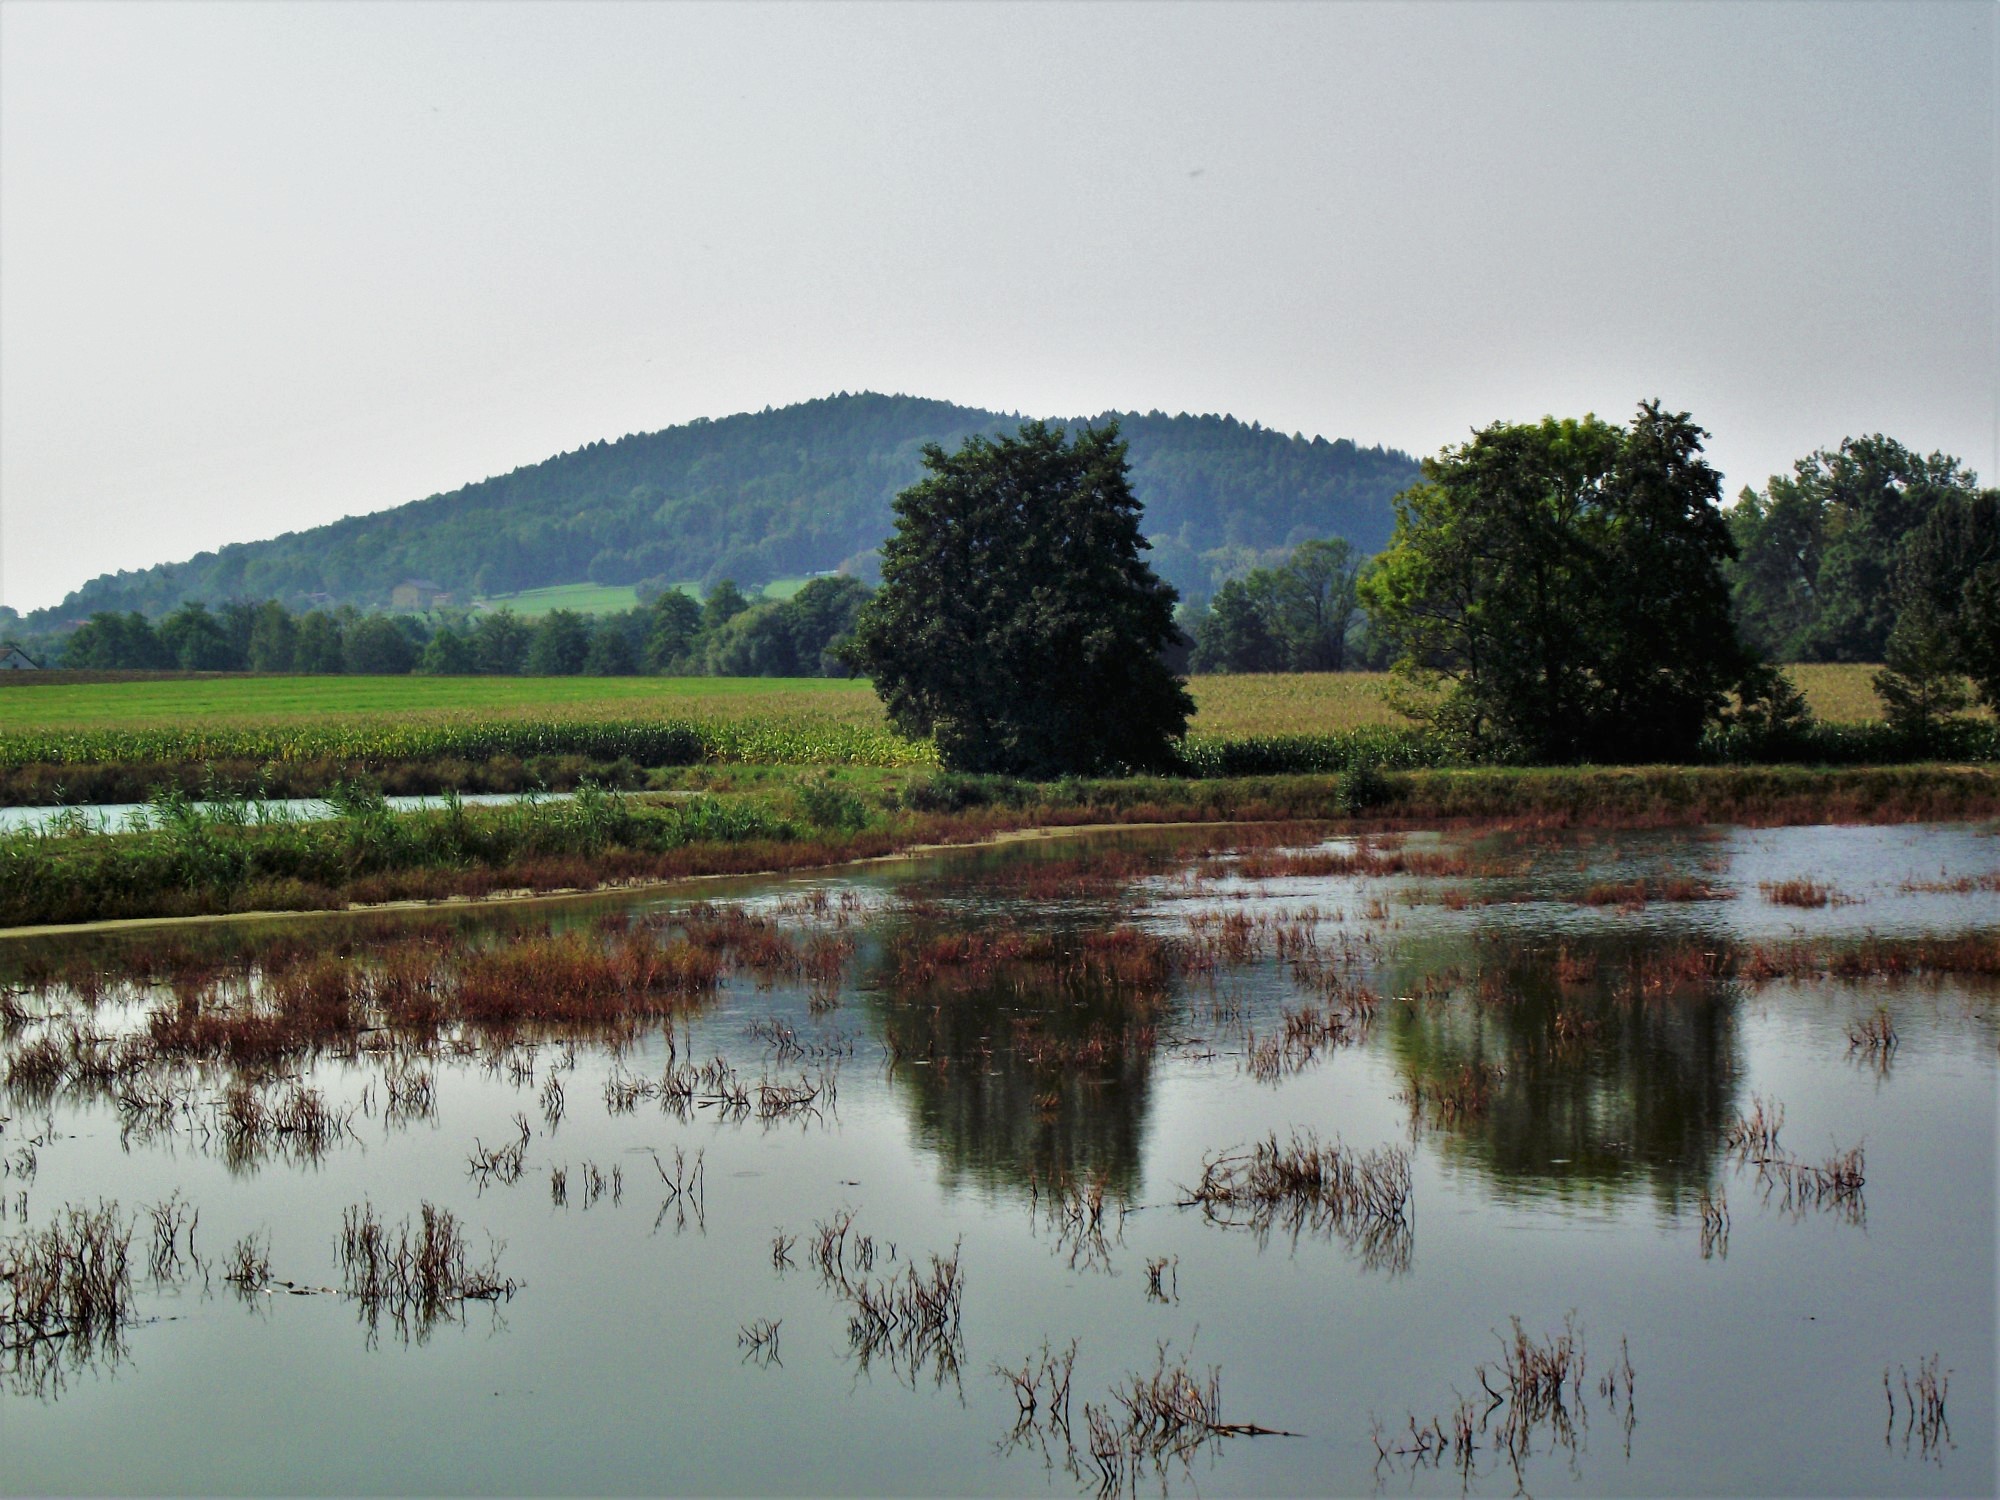 Godziszów Pond and Chełm Mountain